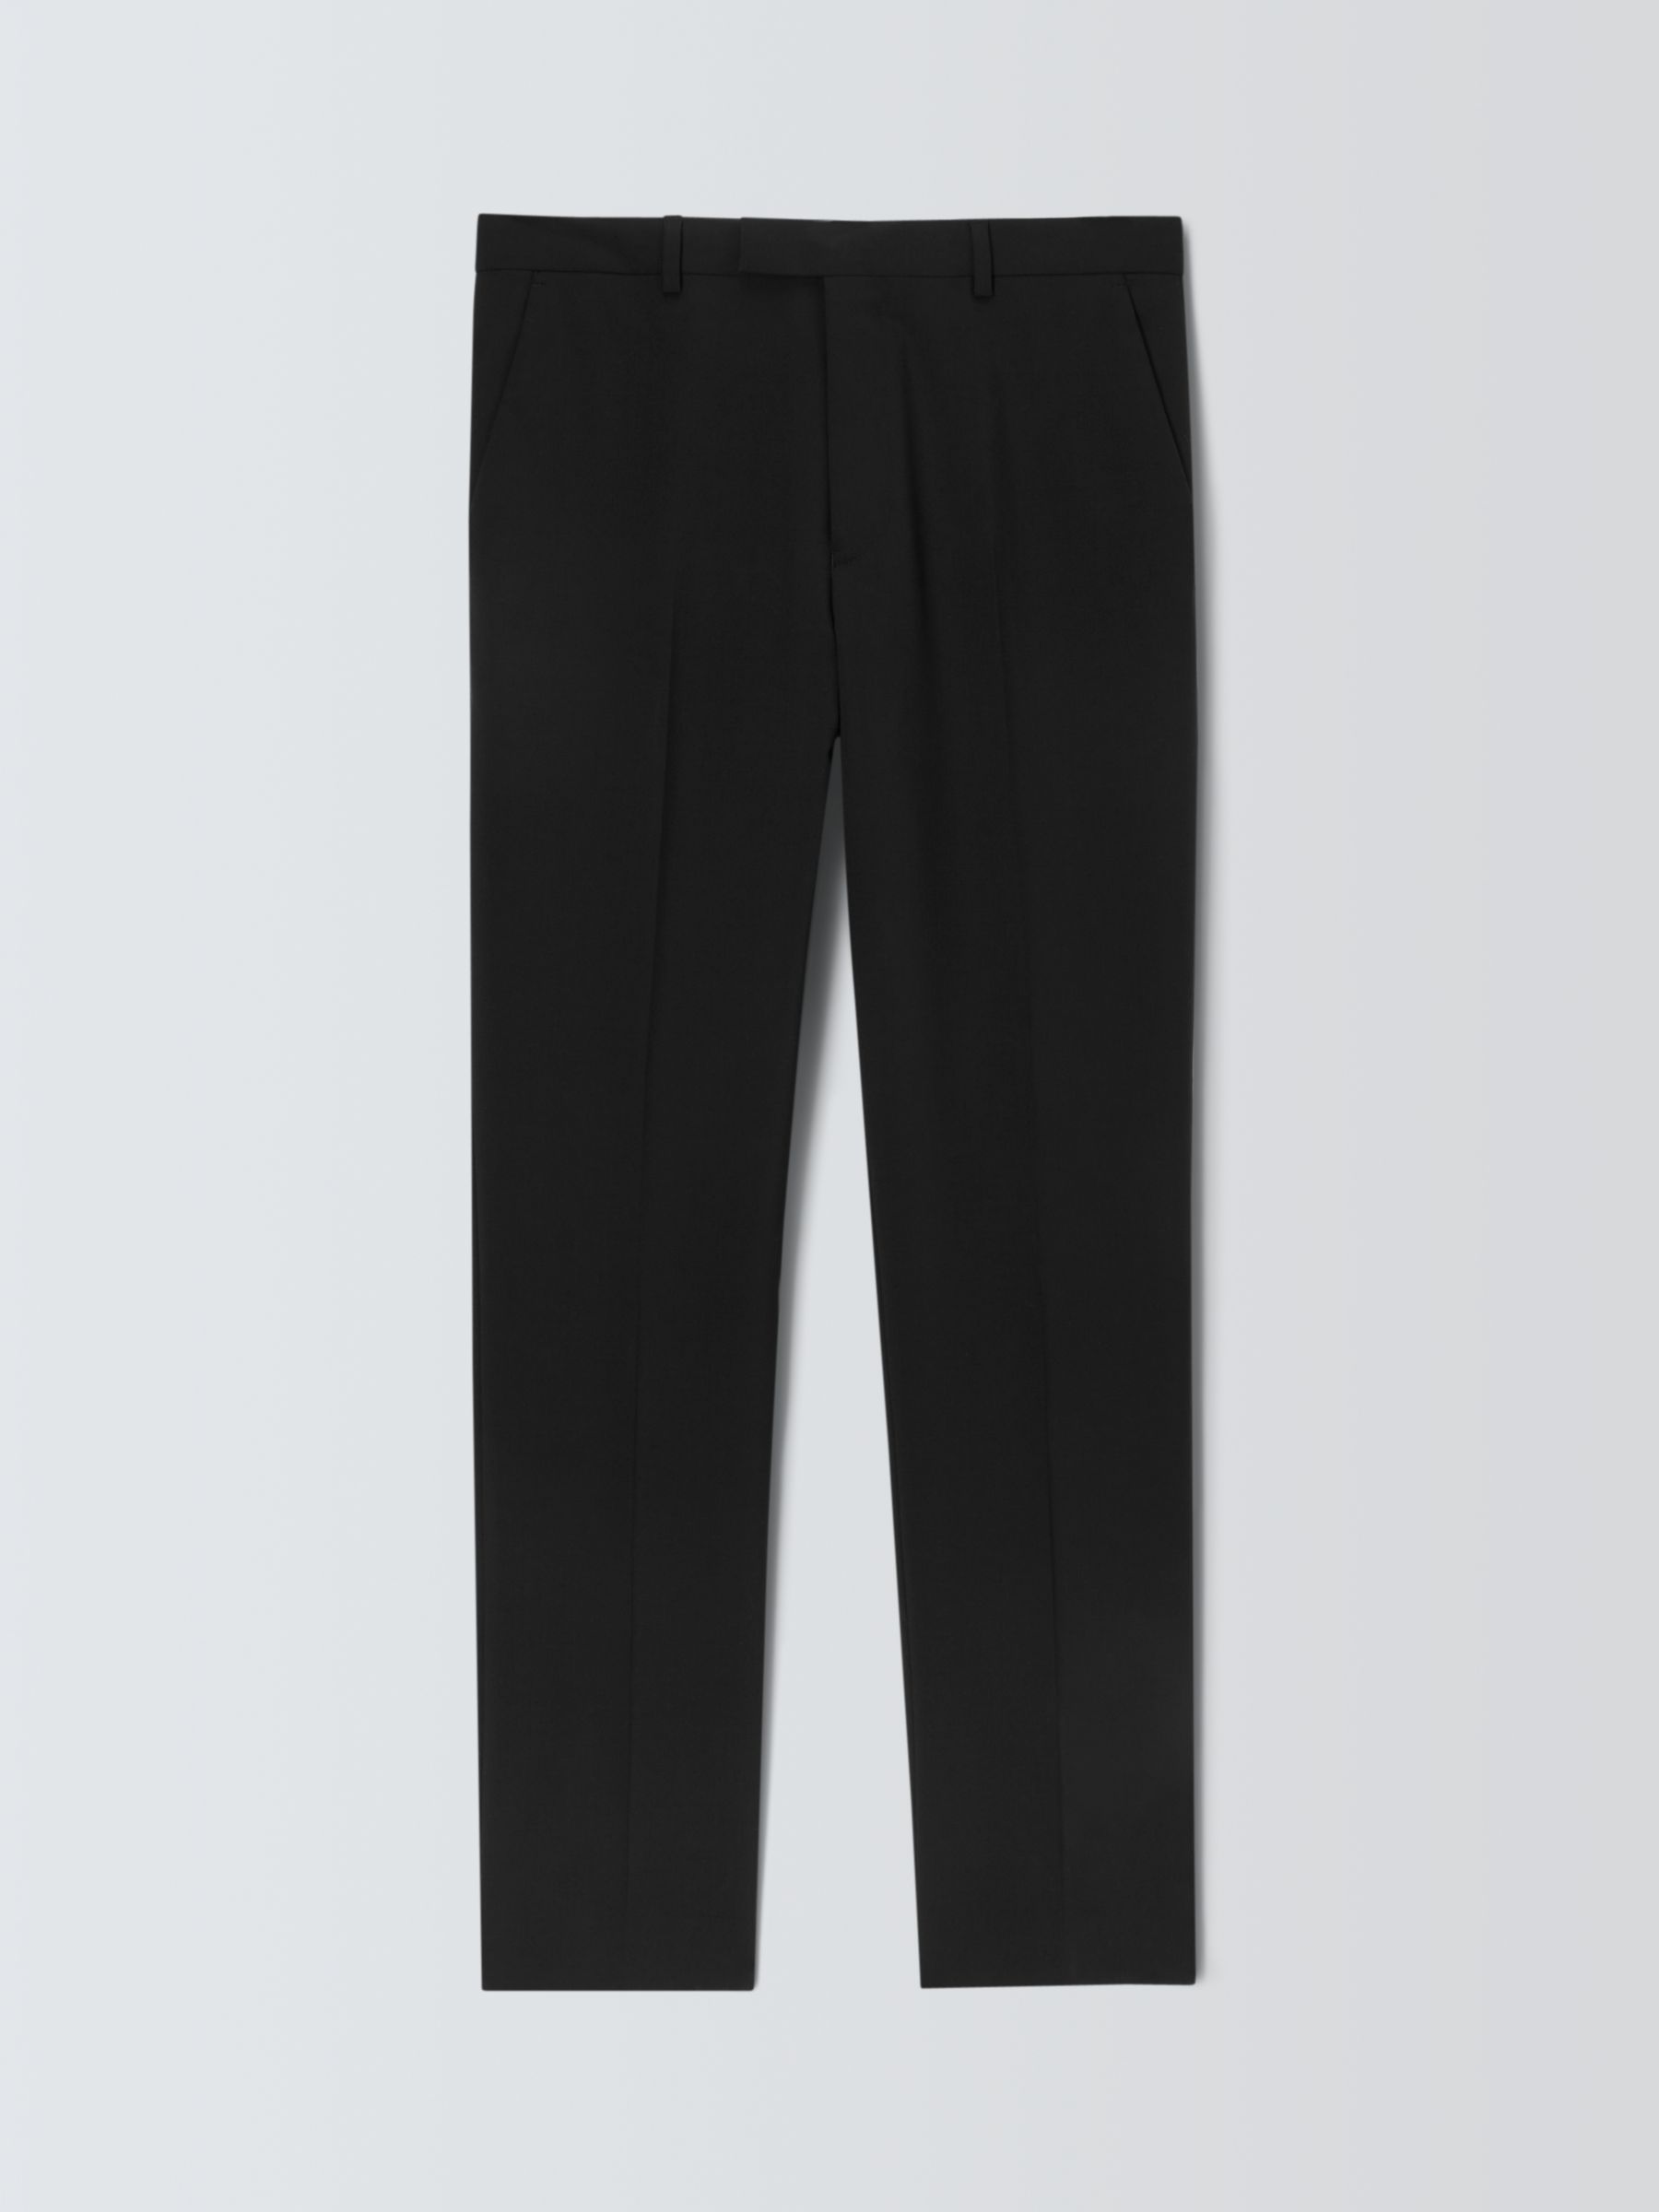 Kin Wool Blend Slim Fit Suit Trousers, Black, 30R